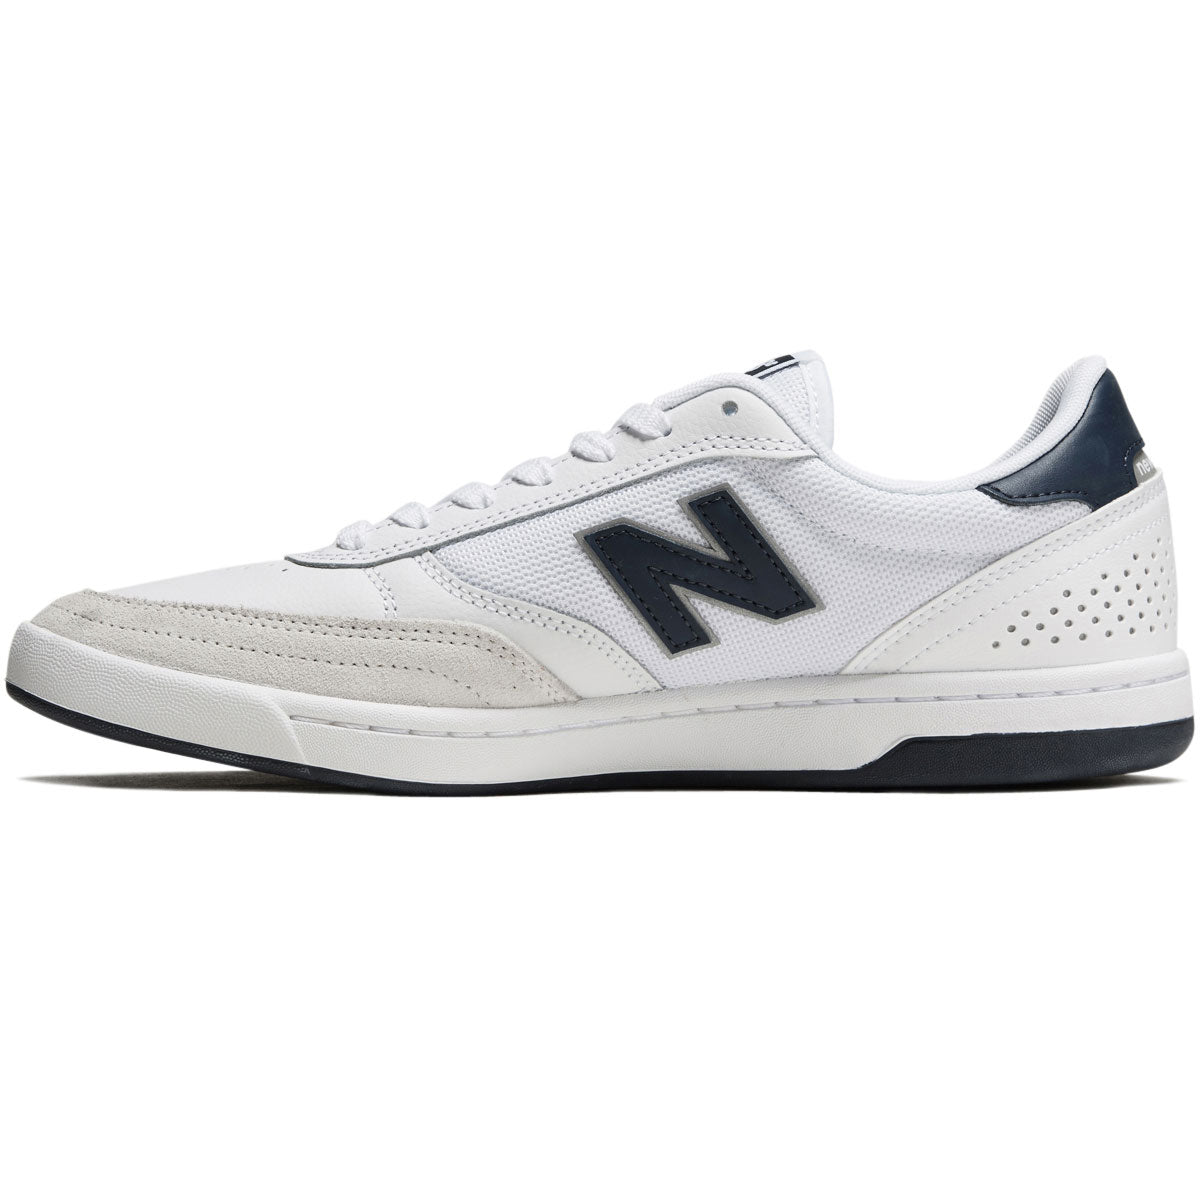 New Balance 440 Shoes - White/Navy/White image 2